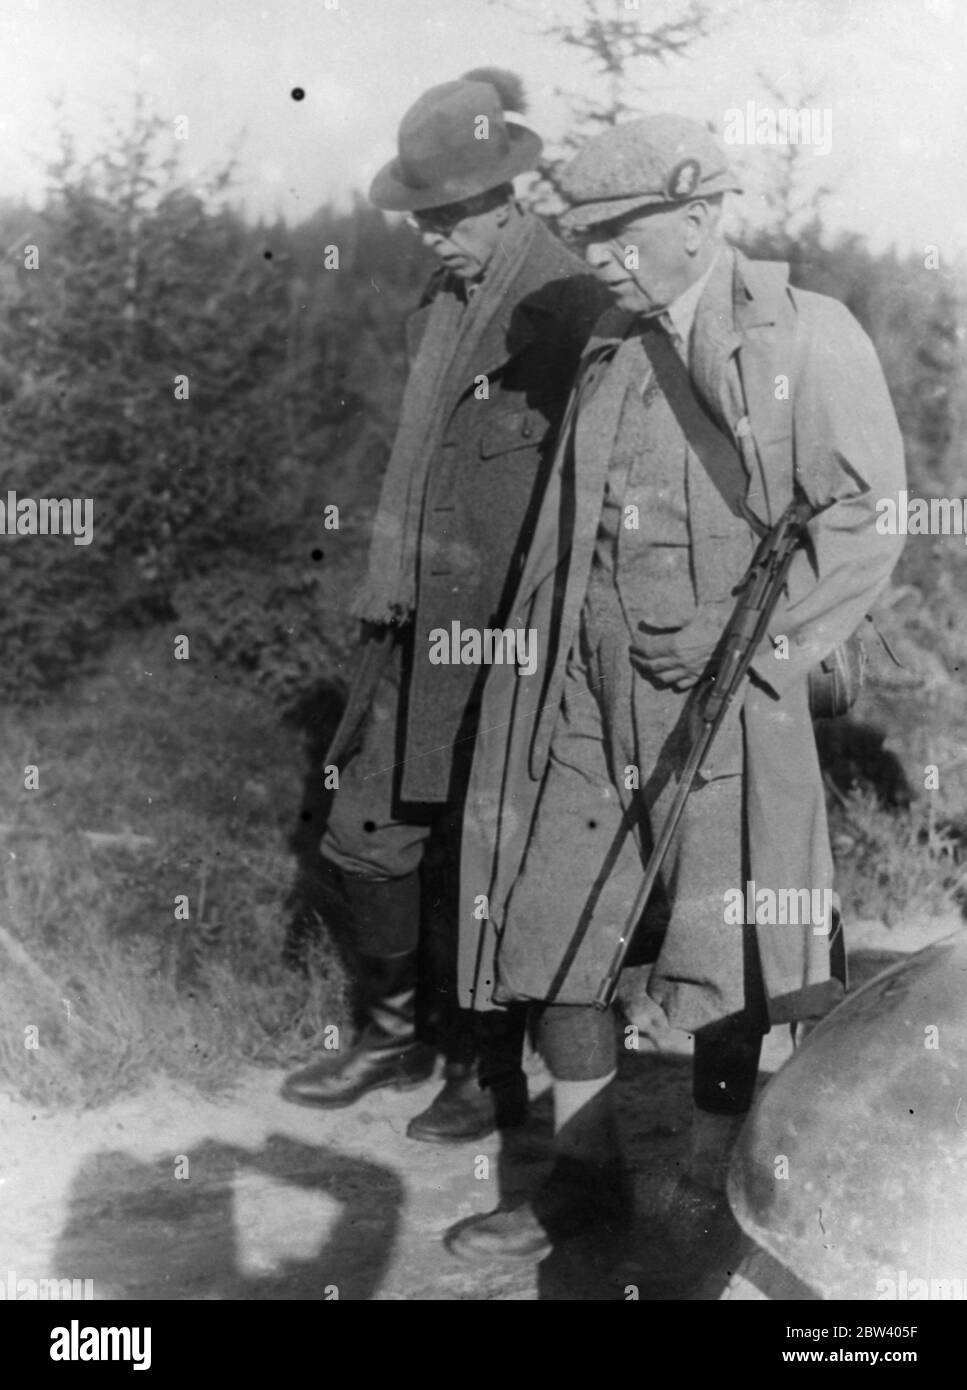 Le roi Gustav va chasser l'élan avec son compagnon anglais. Le roi Gustav a accueilli M. Guinness de Londres lors d'une expédition de chasse à l'élan en Suède . Photos , le roi Gustav et M. Guinness ( à droite ) à la chasse . 19 septembre 1936 Banque D'Images